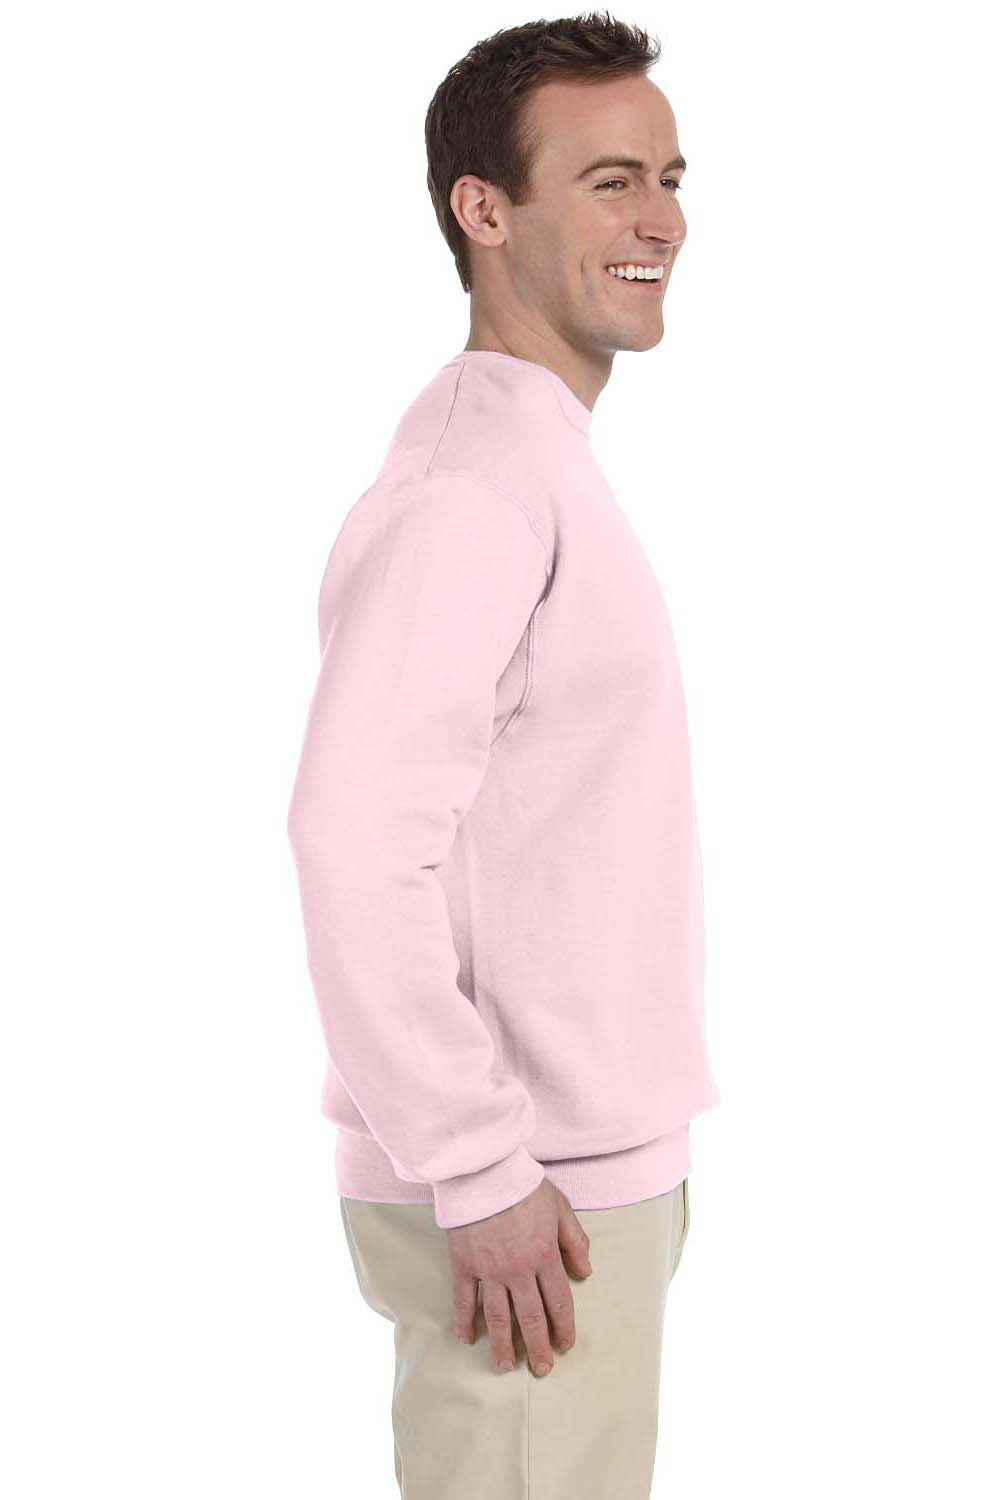 Jerzees 562 Mens NuBlend Fleece Crewneck Sweatshirt Classic Pink Side